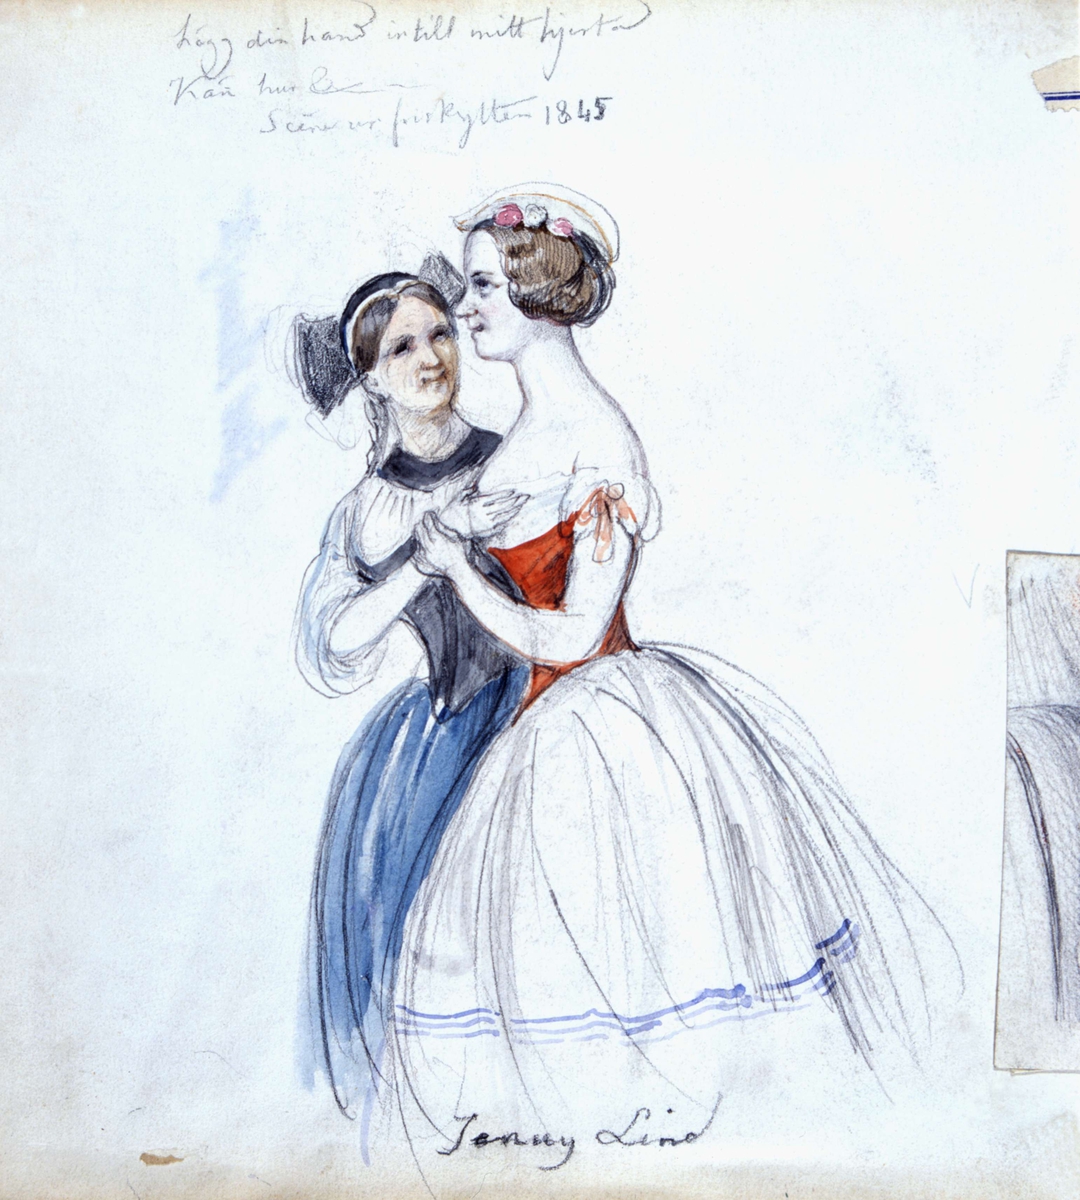 "Lägg din hand intill mitt hjerta. Känn hur..." Scen ur Friskytten, 1845. Akvarellerad blyertsteckning av Fritz von Dardel.